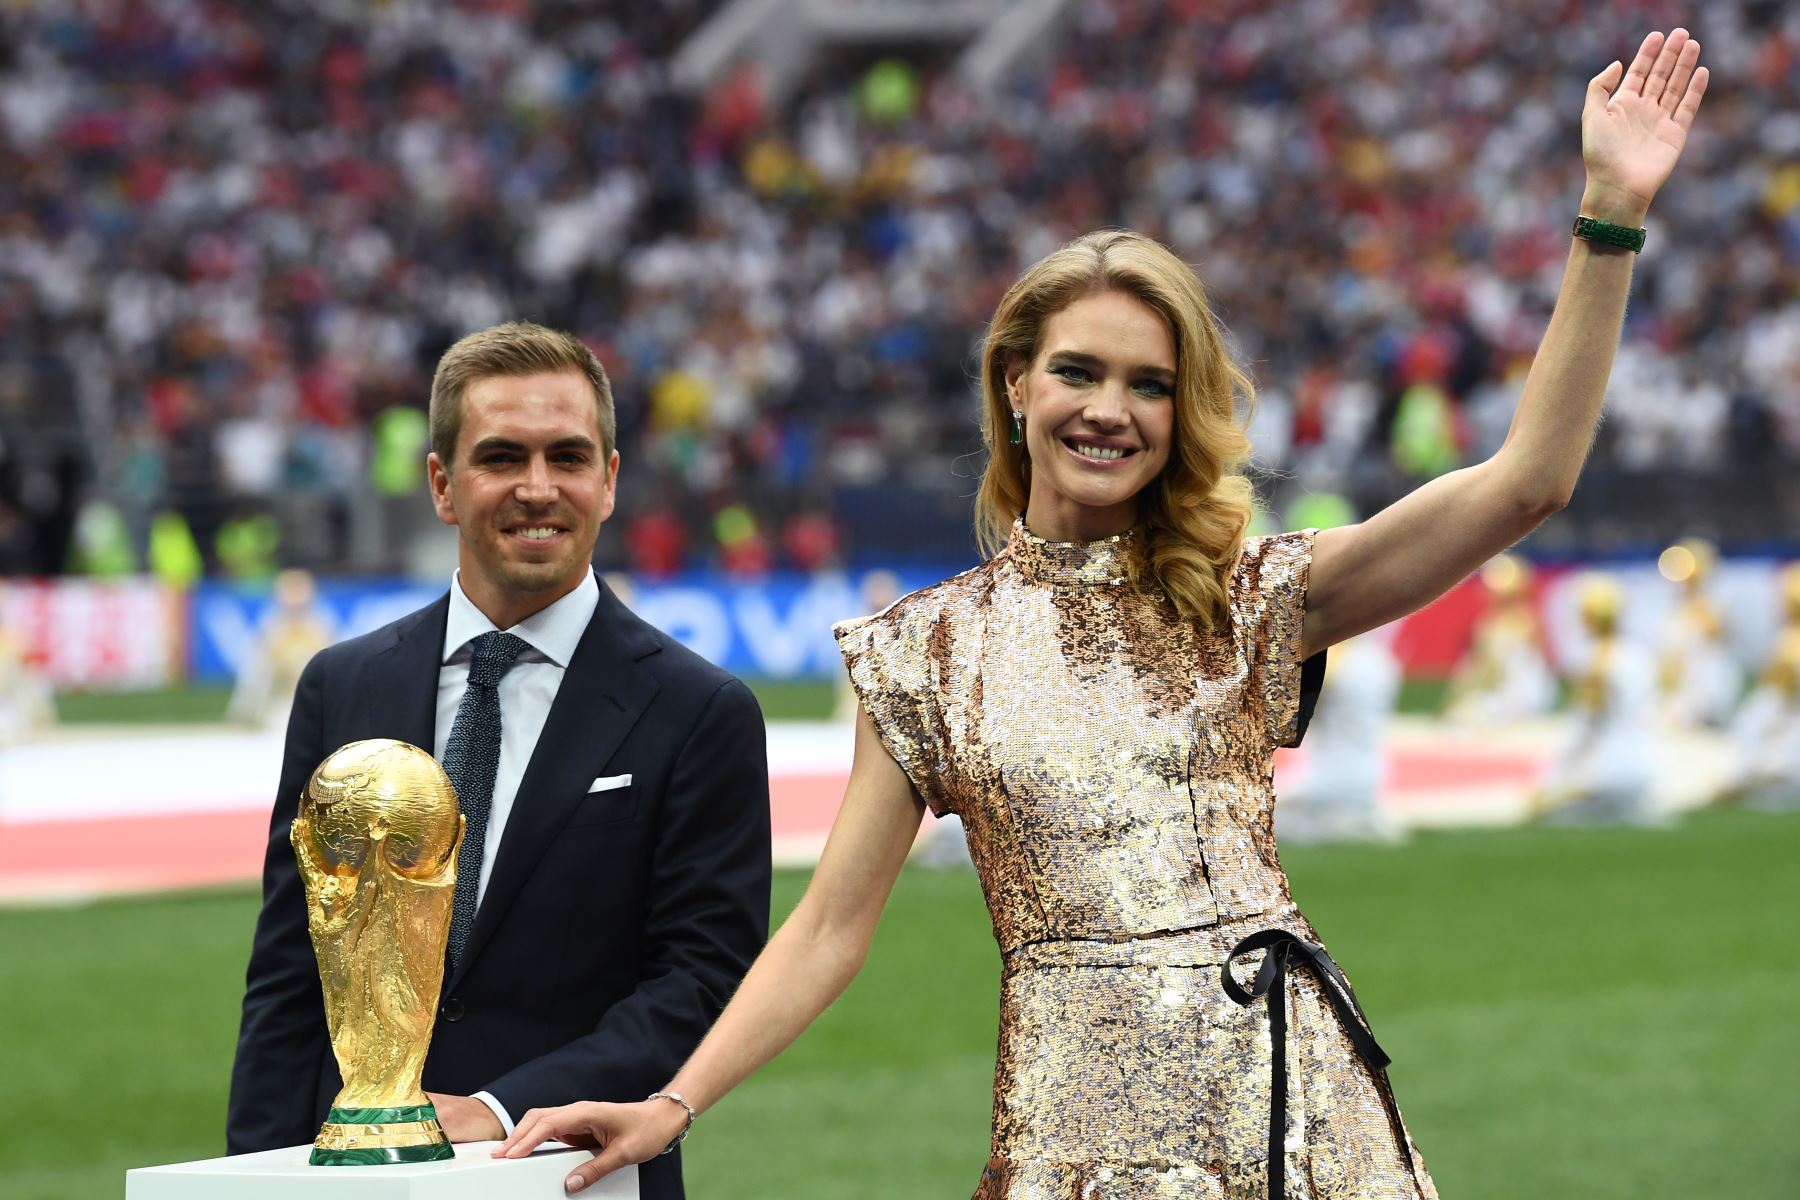 El ex capitán de Alemania Philipp Lahm y la modelo rusa Natalia Vodianova posan con el trofeo de la Copa Mundial durante la ceremonia de clausura de la Copa Mundial Rusia 2018 antes del partido de fútbol final entre Francia y Croacia.Foto:afp